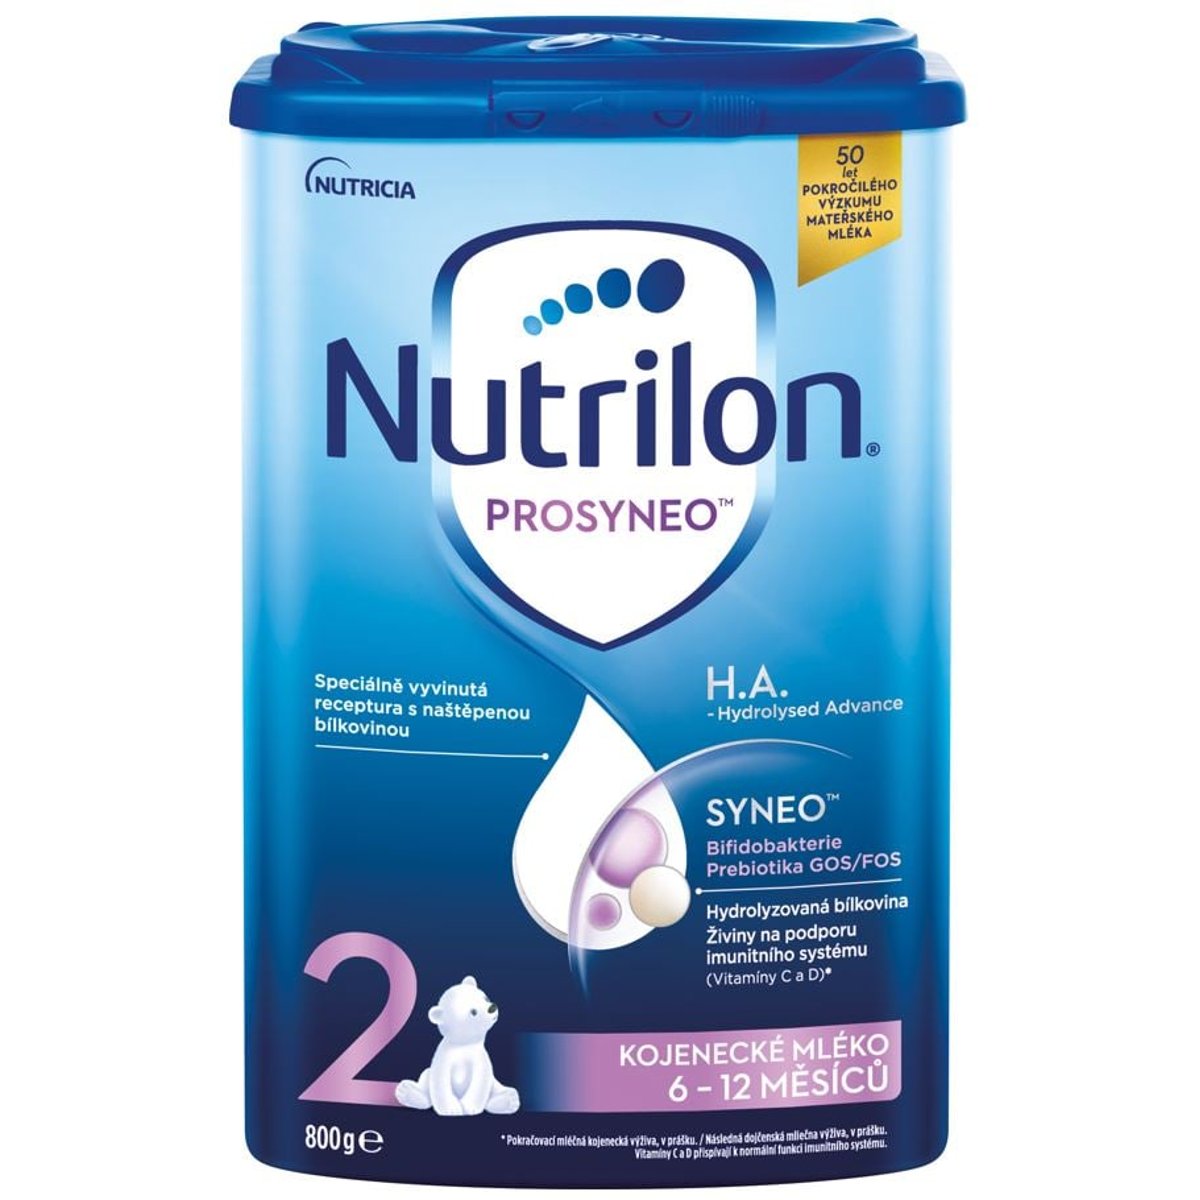 Nutrilon Prosyneo 2 H. A. kojenecké mléko